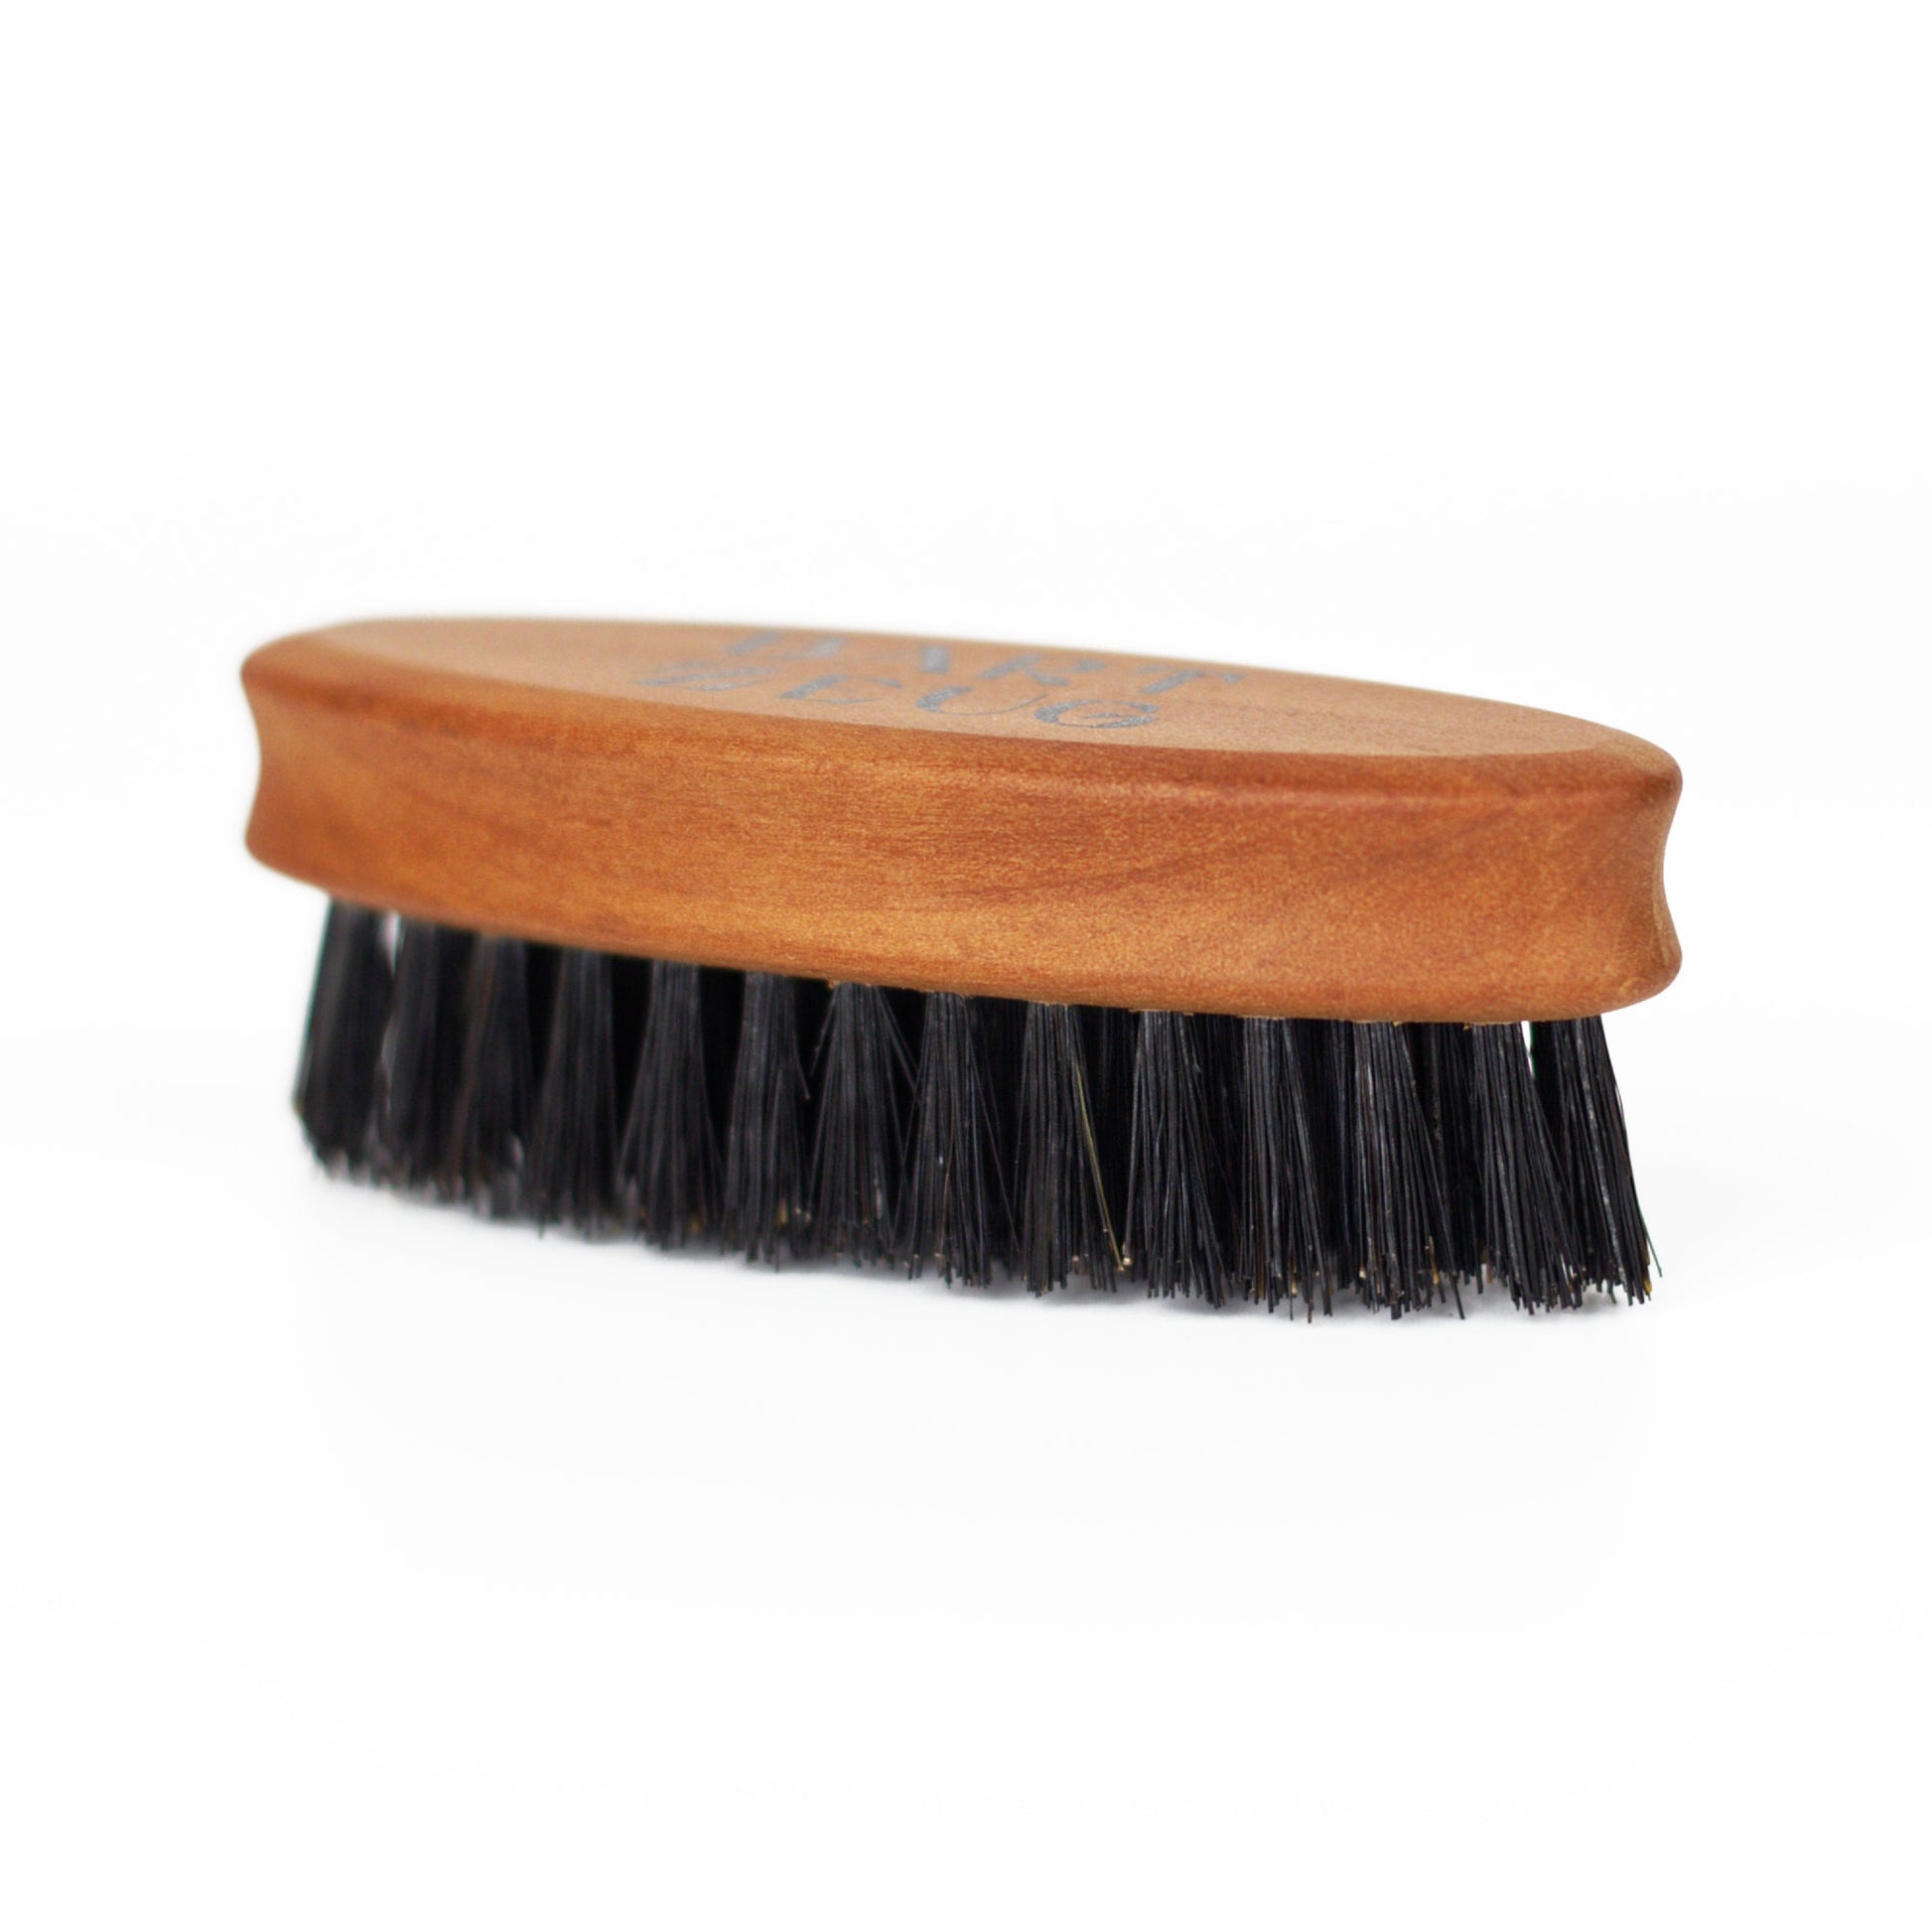 Bartzeug Bartbürste klein, Produktfoto: Bartbürste klein von der Seite, Birnbaumholz & WIldschweinborsten